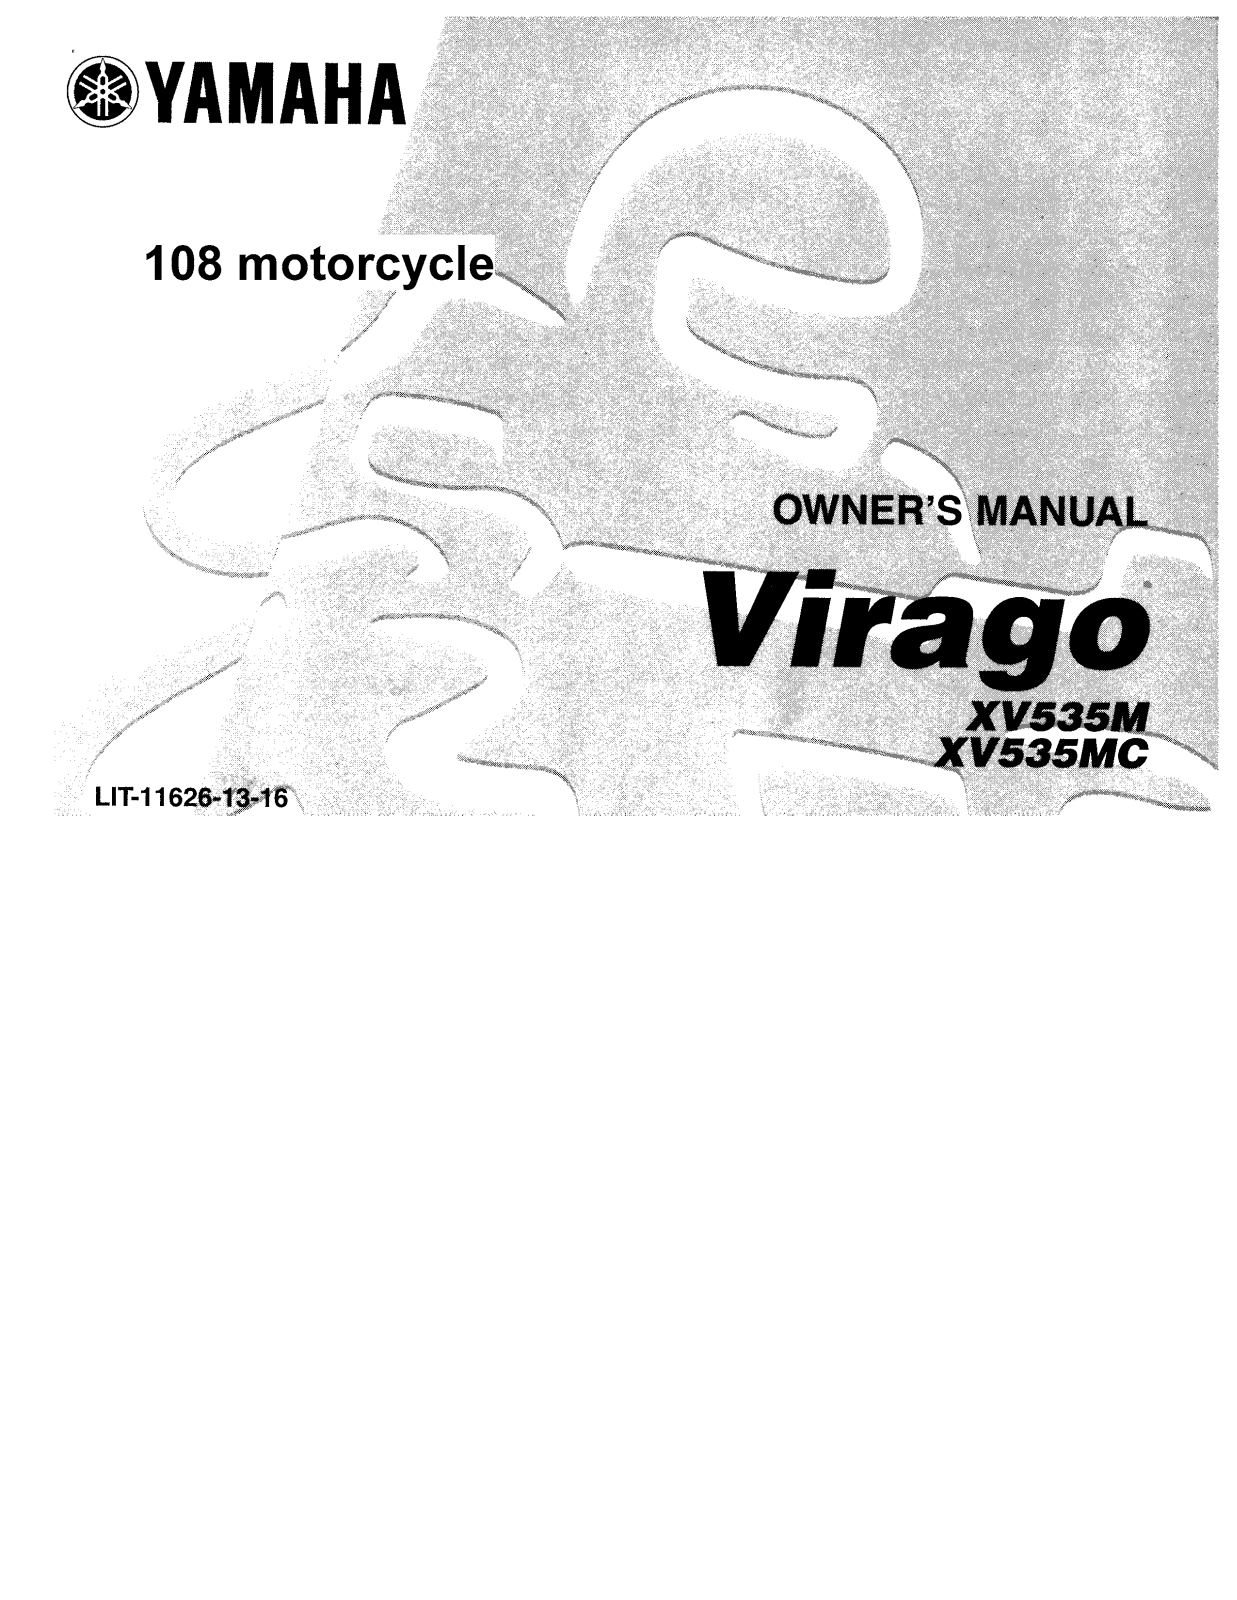 Yamaha Virago XV535M MC User Manual